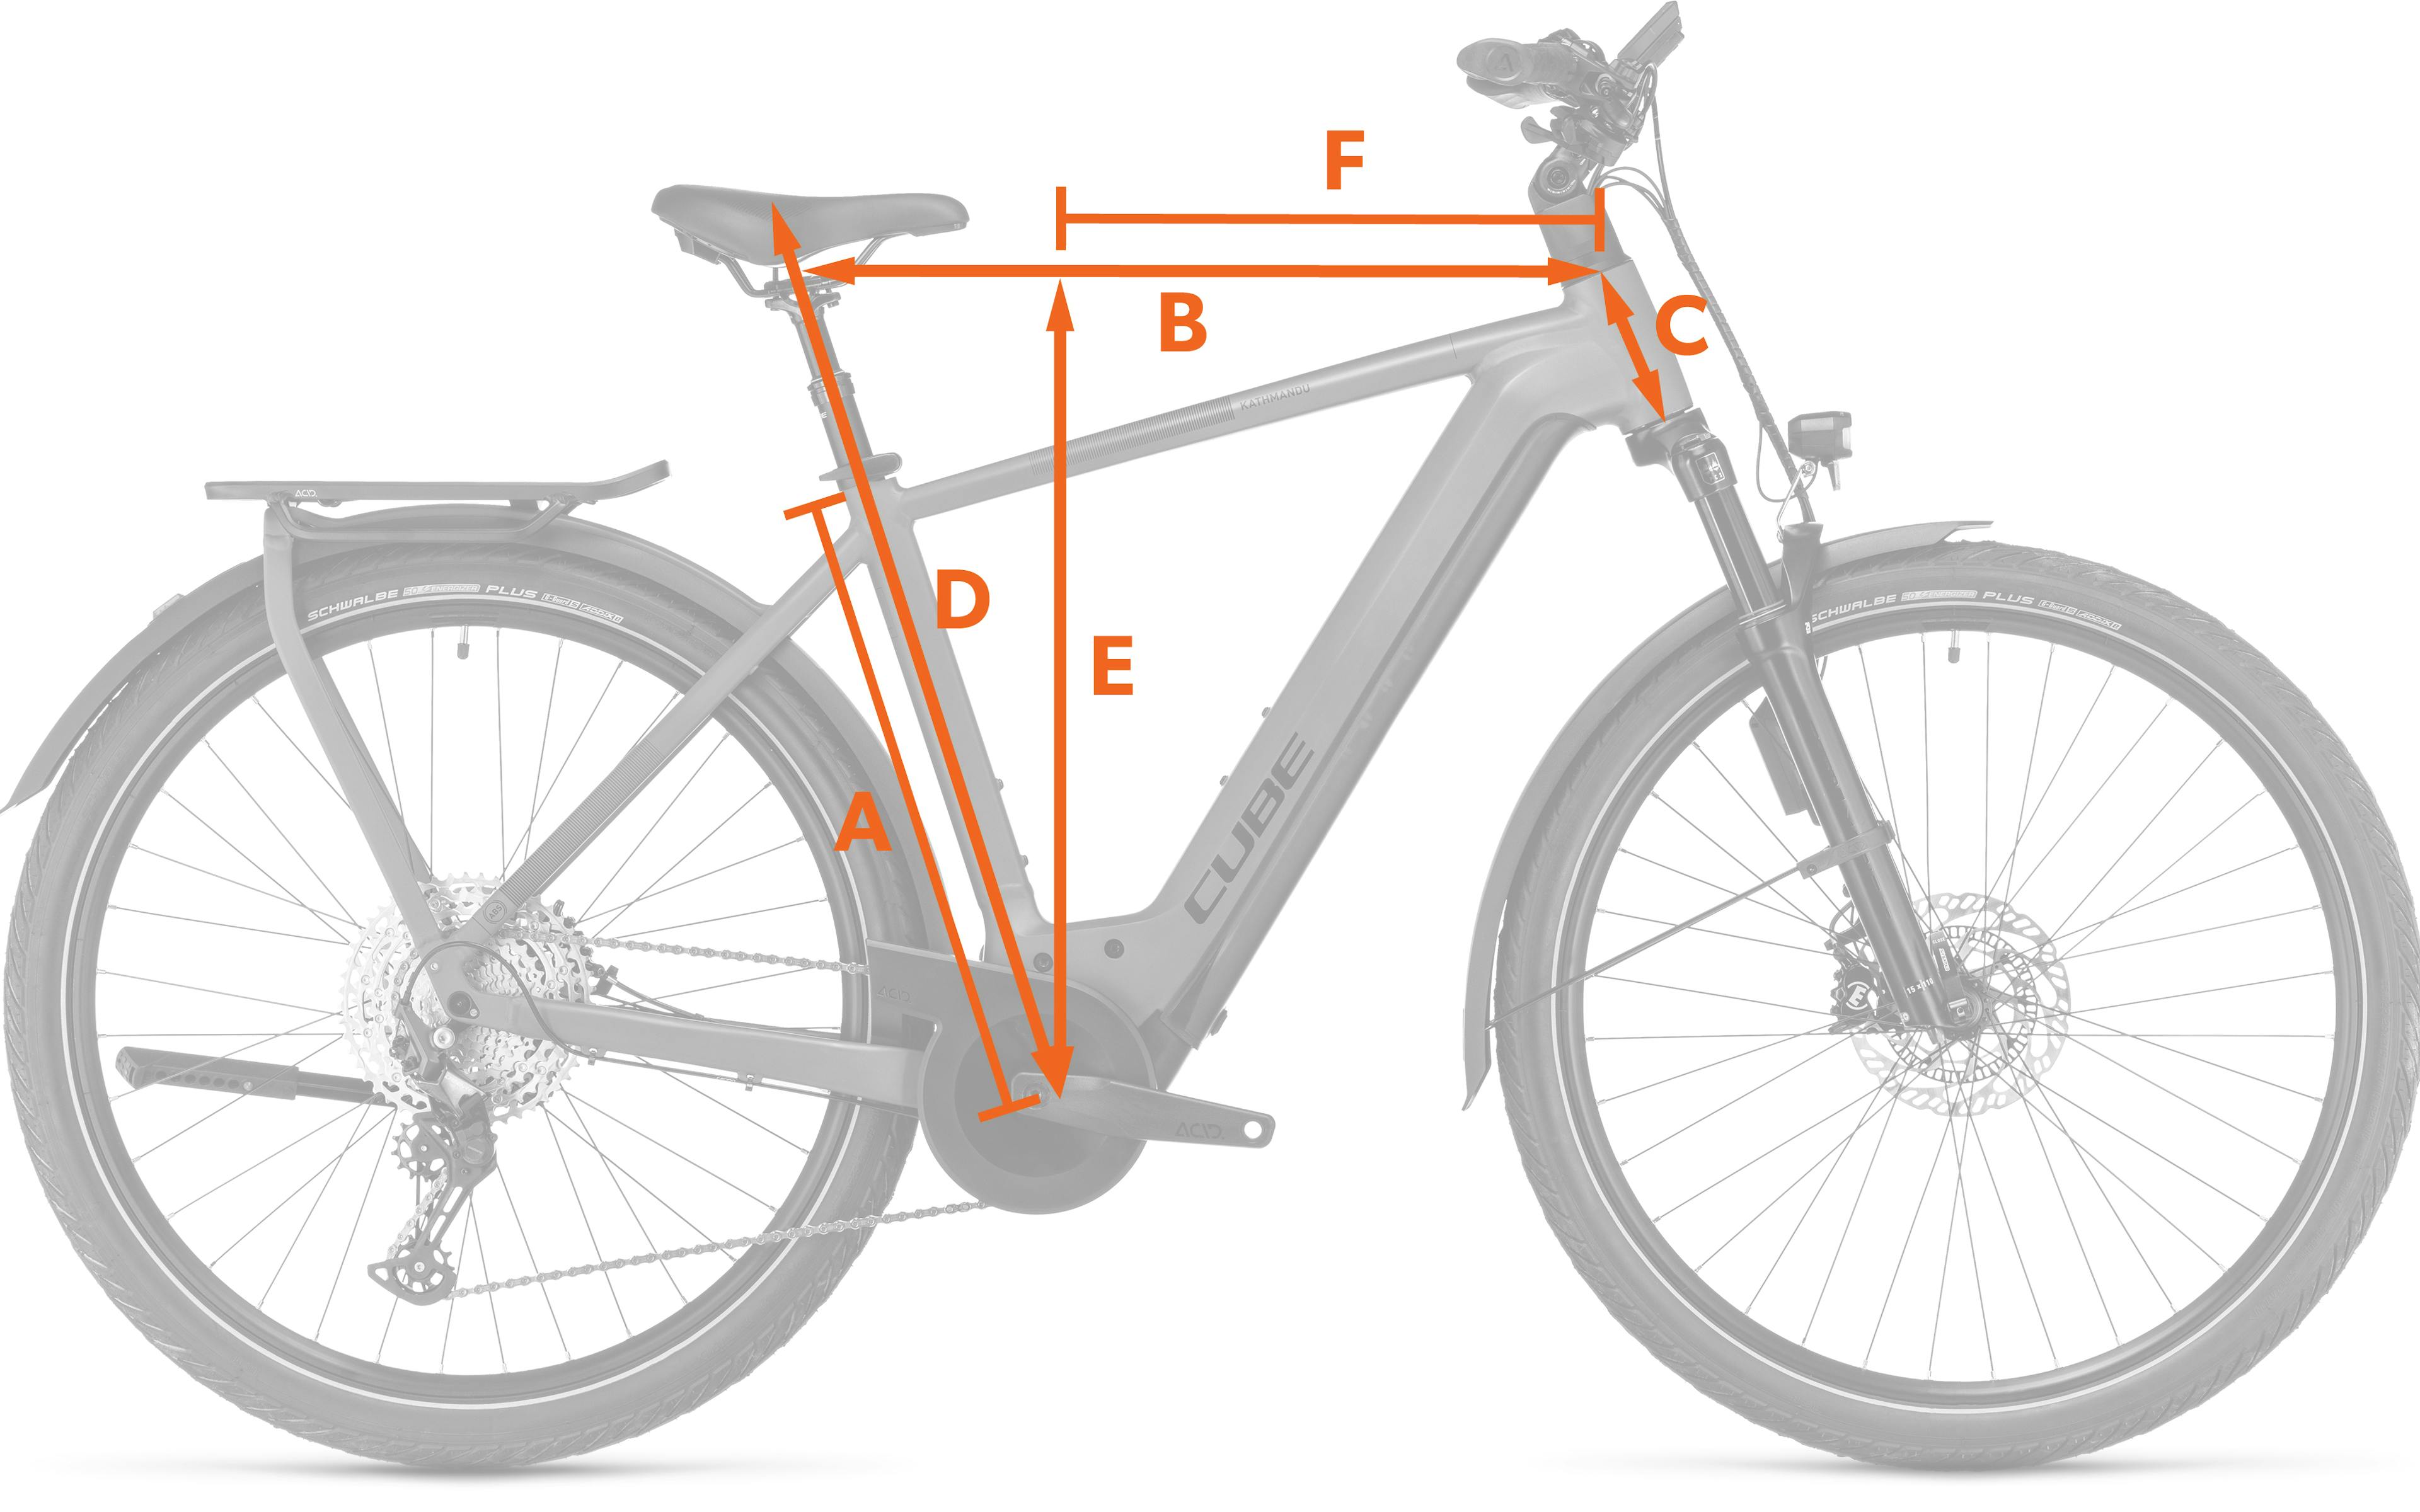 Darstellung der wichtigsten Rahmenmaße für einen Fahrradkauf.